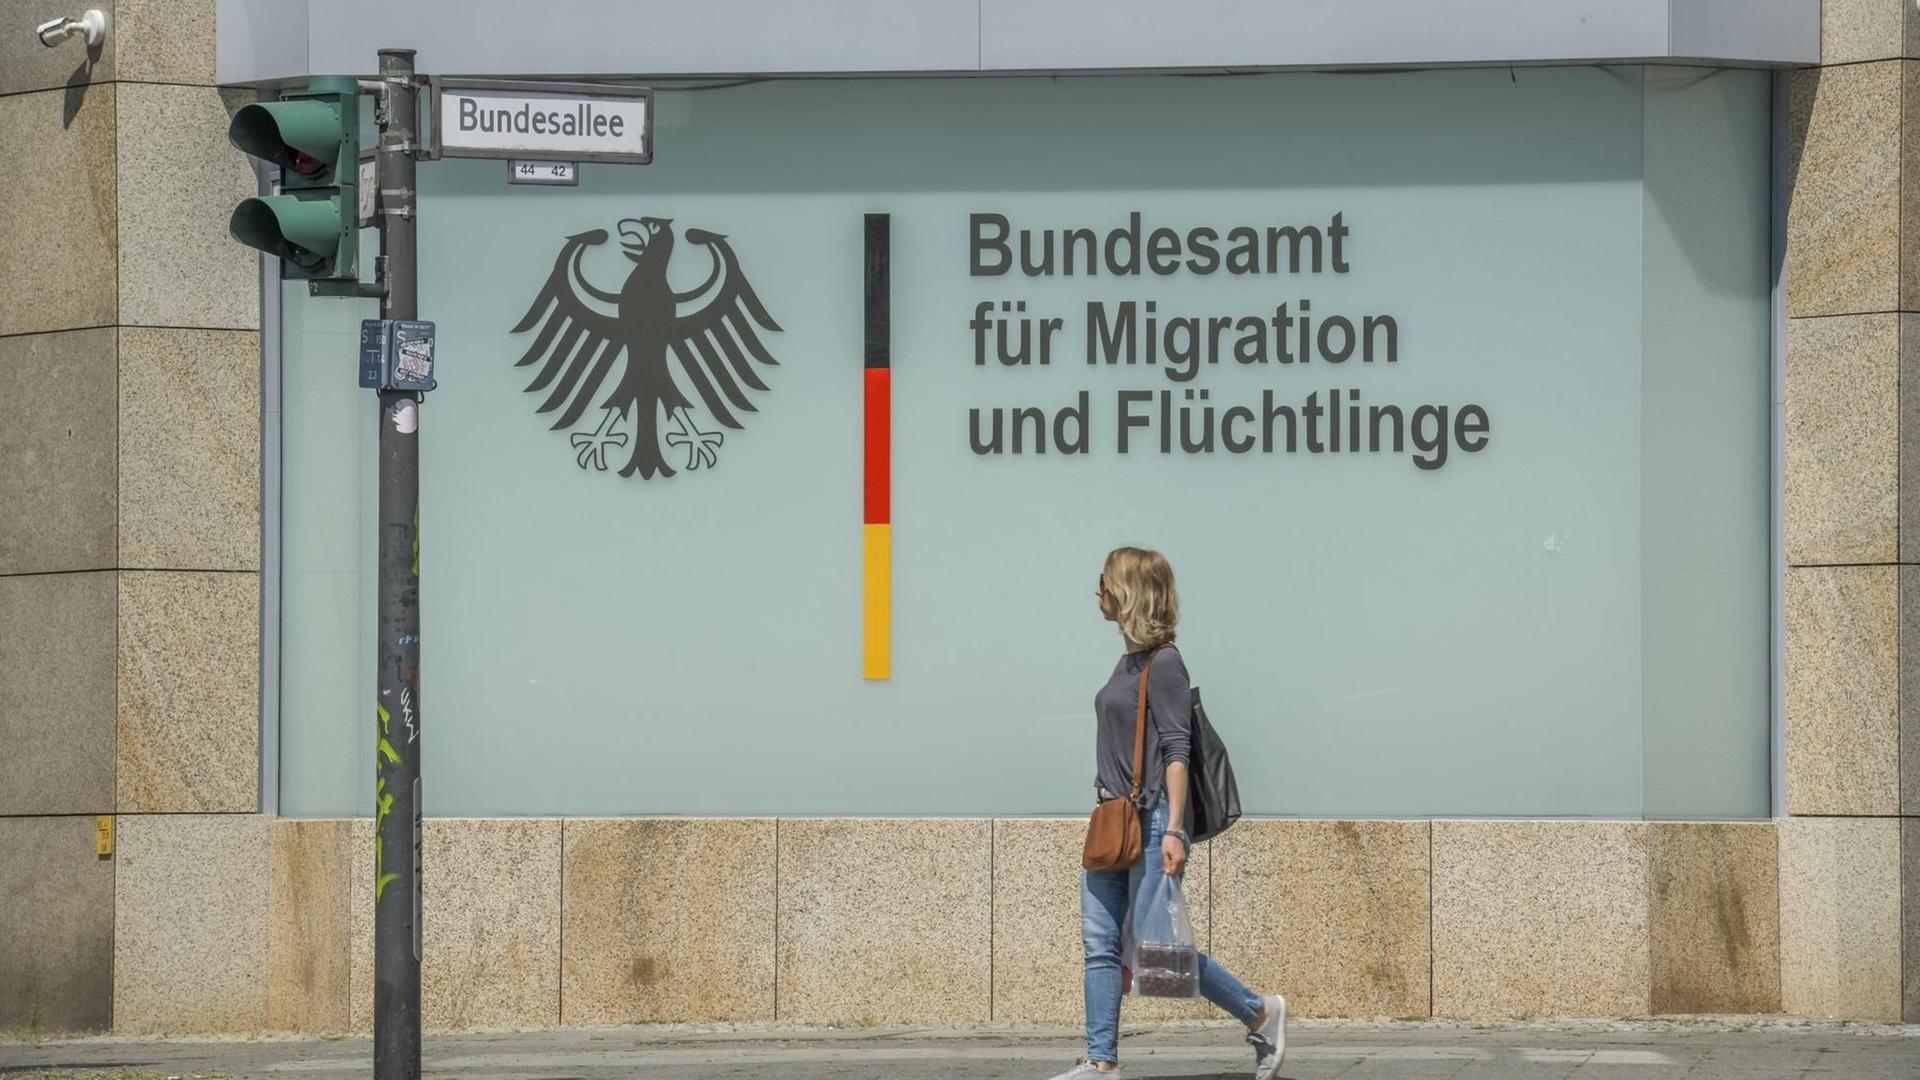 Bundesinnenministerin - Faeser: Bundesamt für Migration soll personell verstärkt werden